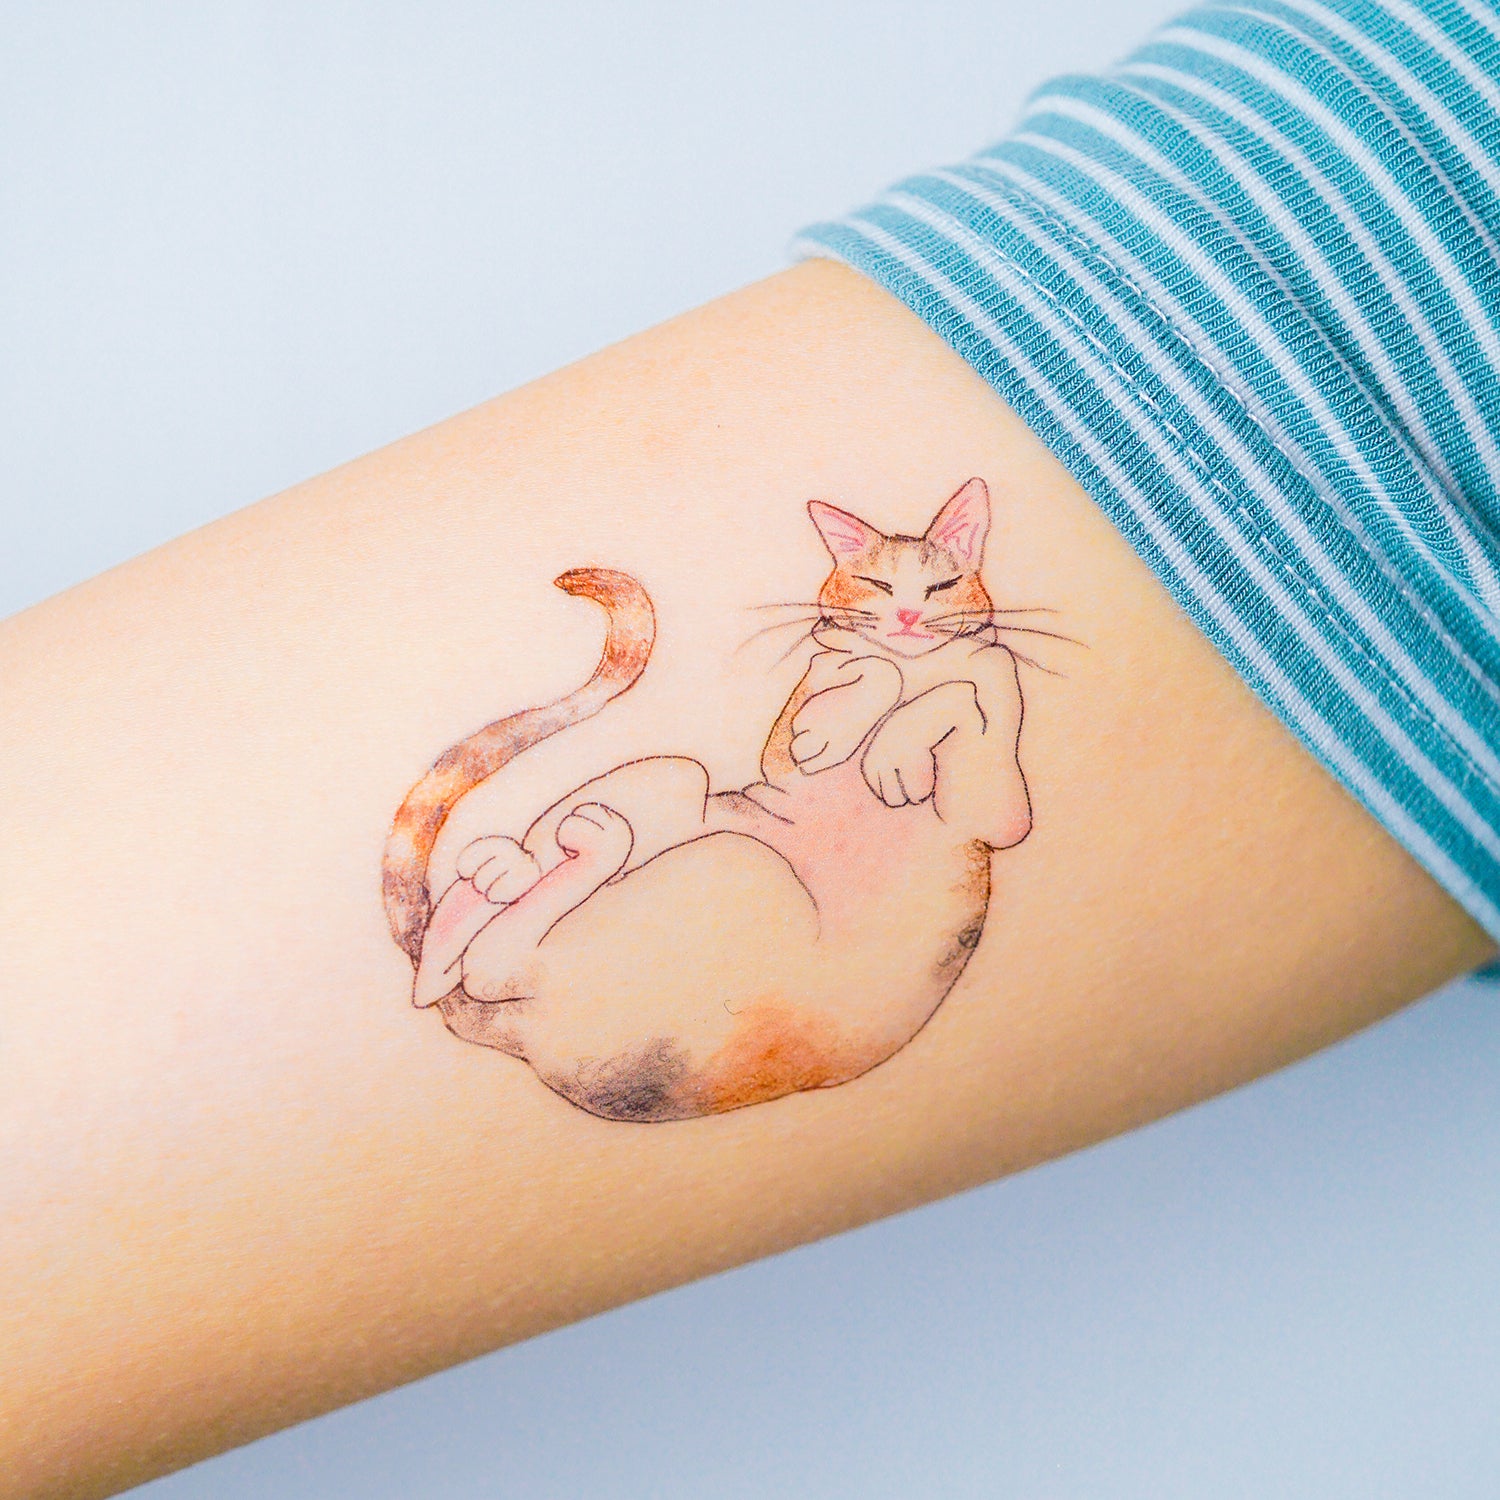 Pin on Cat Tattoo Ideas